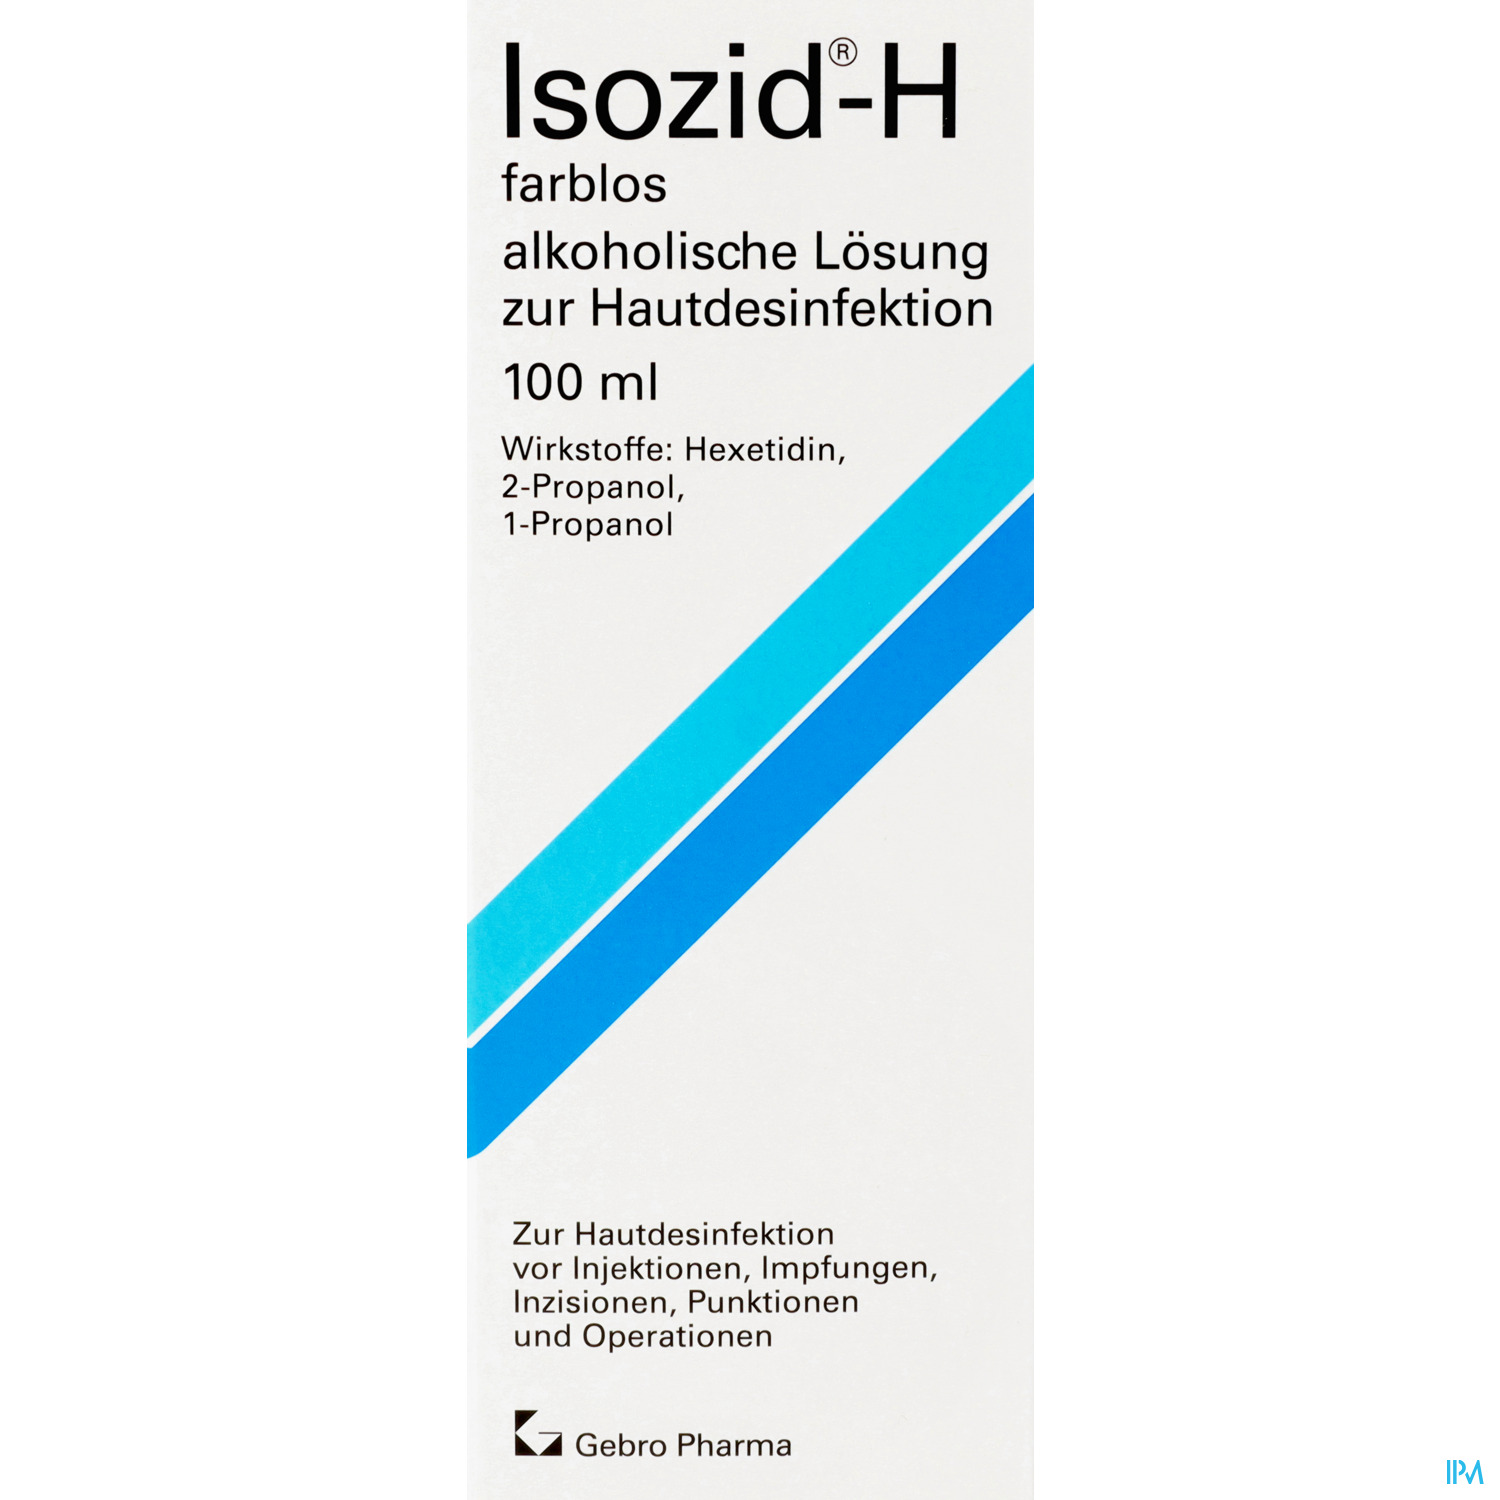 Isozid - H farblos - alkoholische Lösung zur Hautdesinfektion